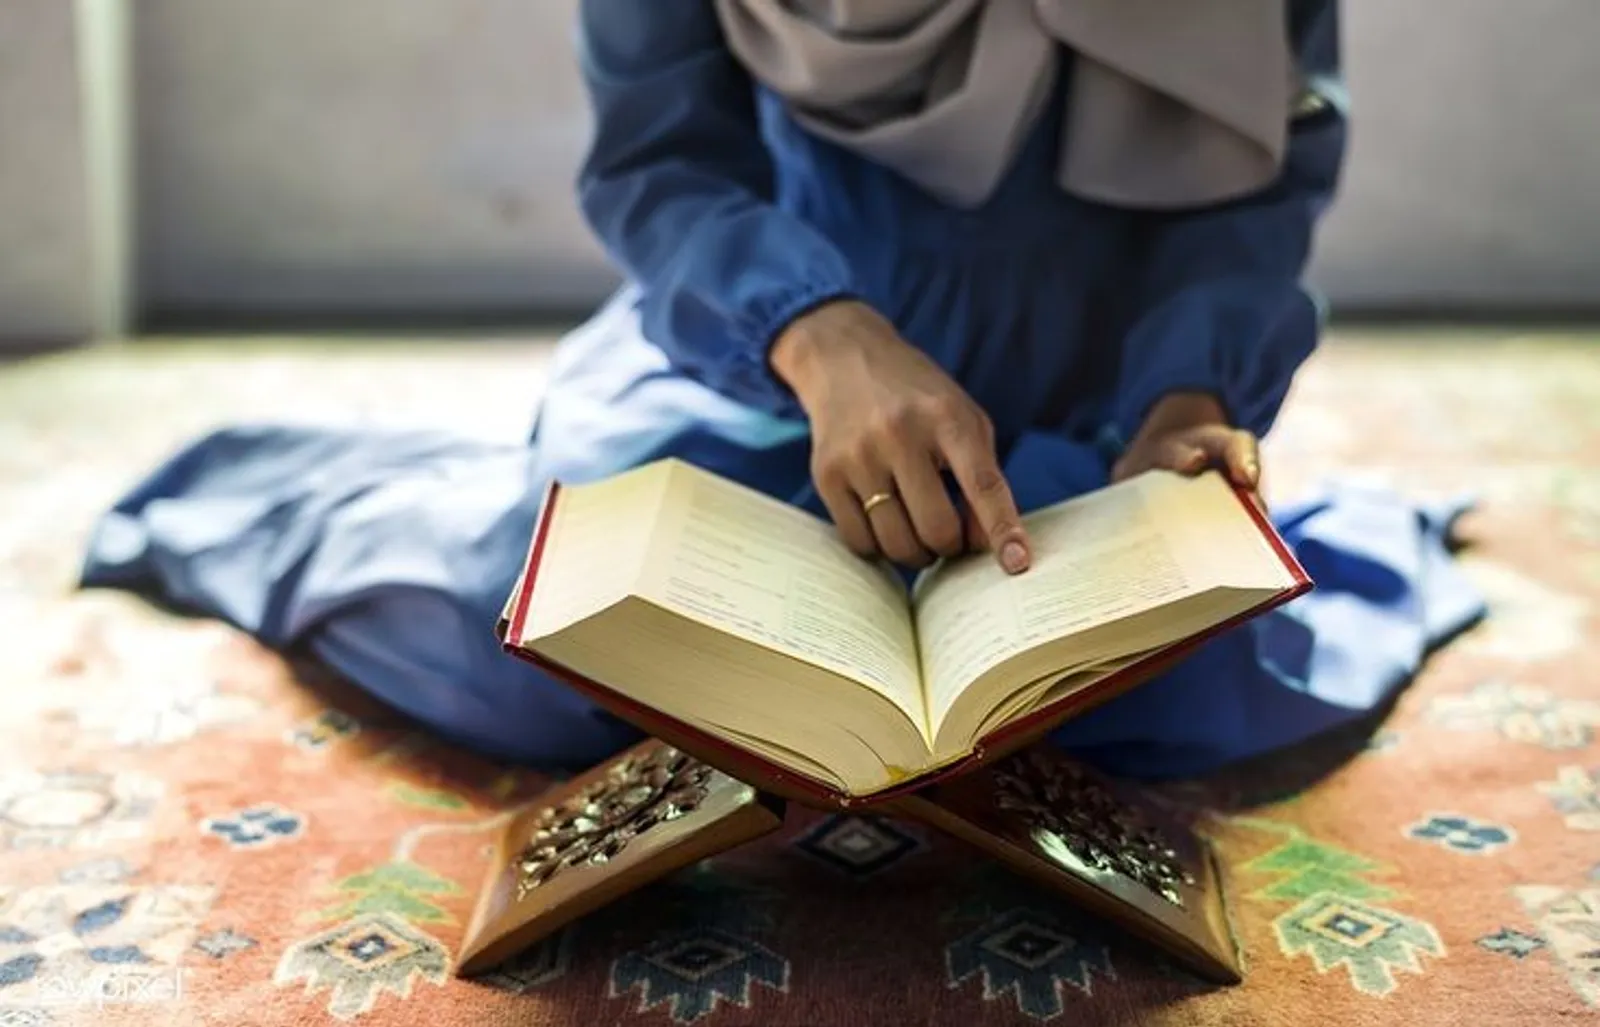 Biar Nggak Bosan, Ini 12 Aktivitas Selama #RamadanDiRumahAja